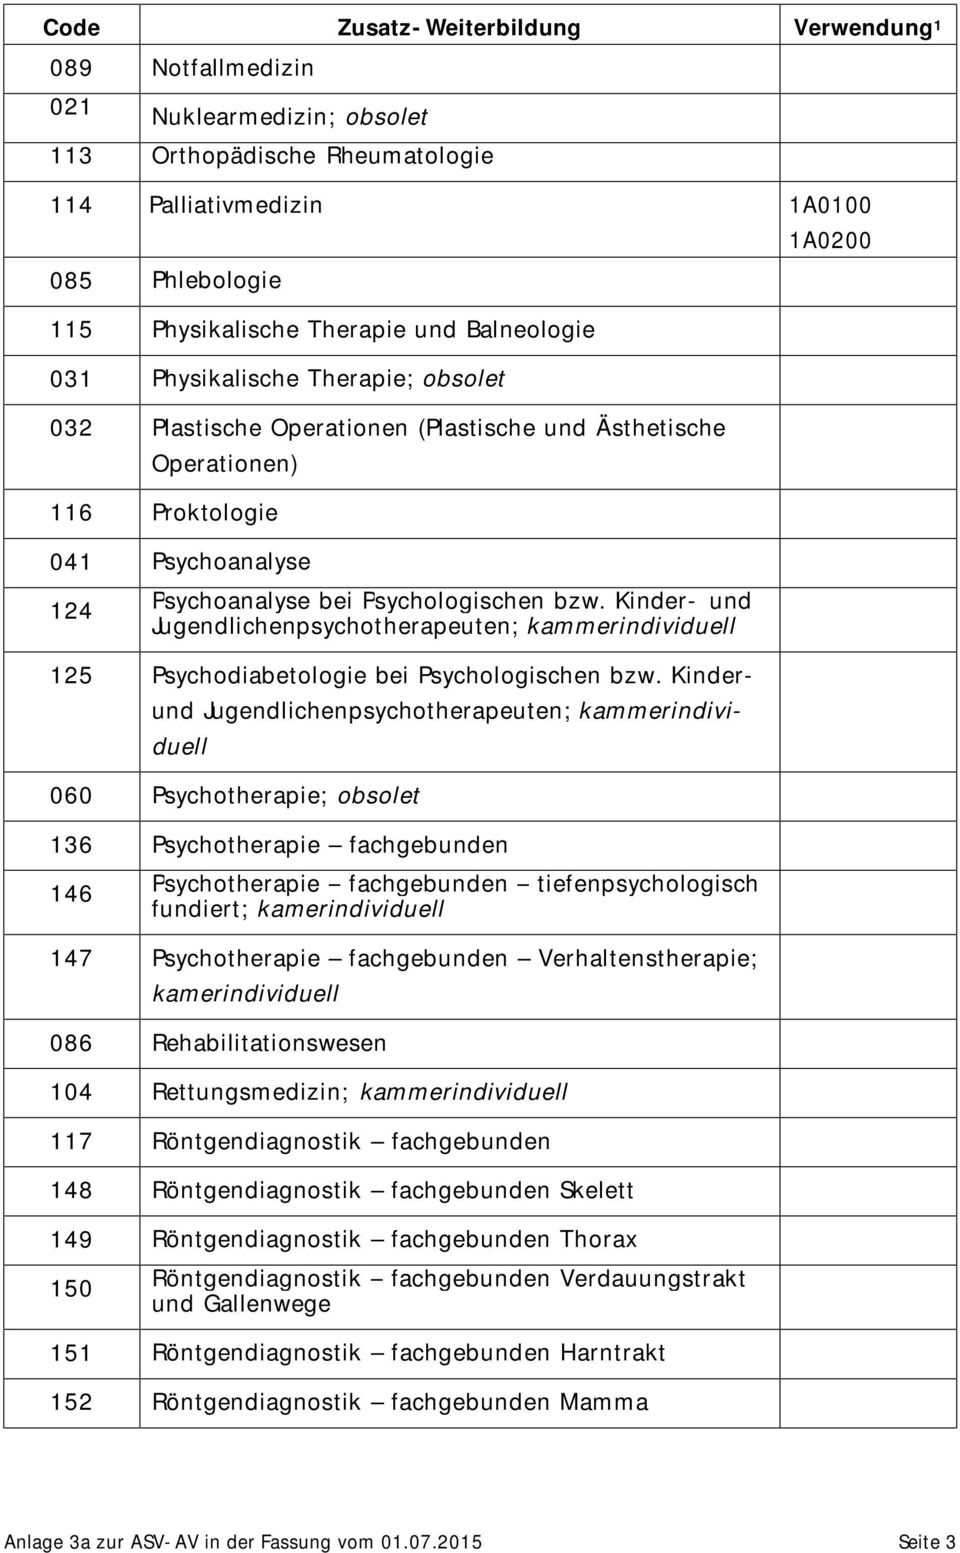 Kinder- und Jugendlichenpsychotherapeuten; 125 Psychodiabetologie bei Psychologischen bzw.